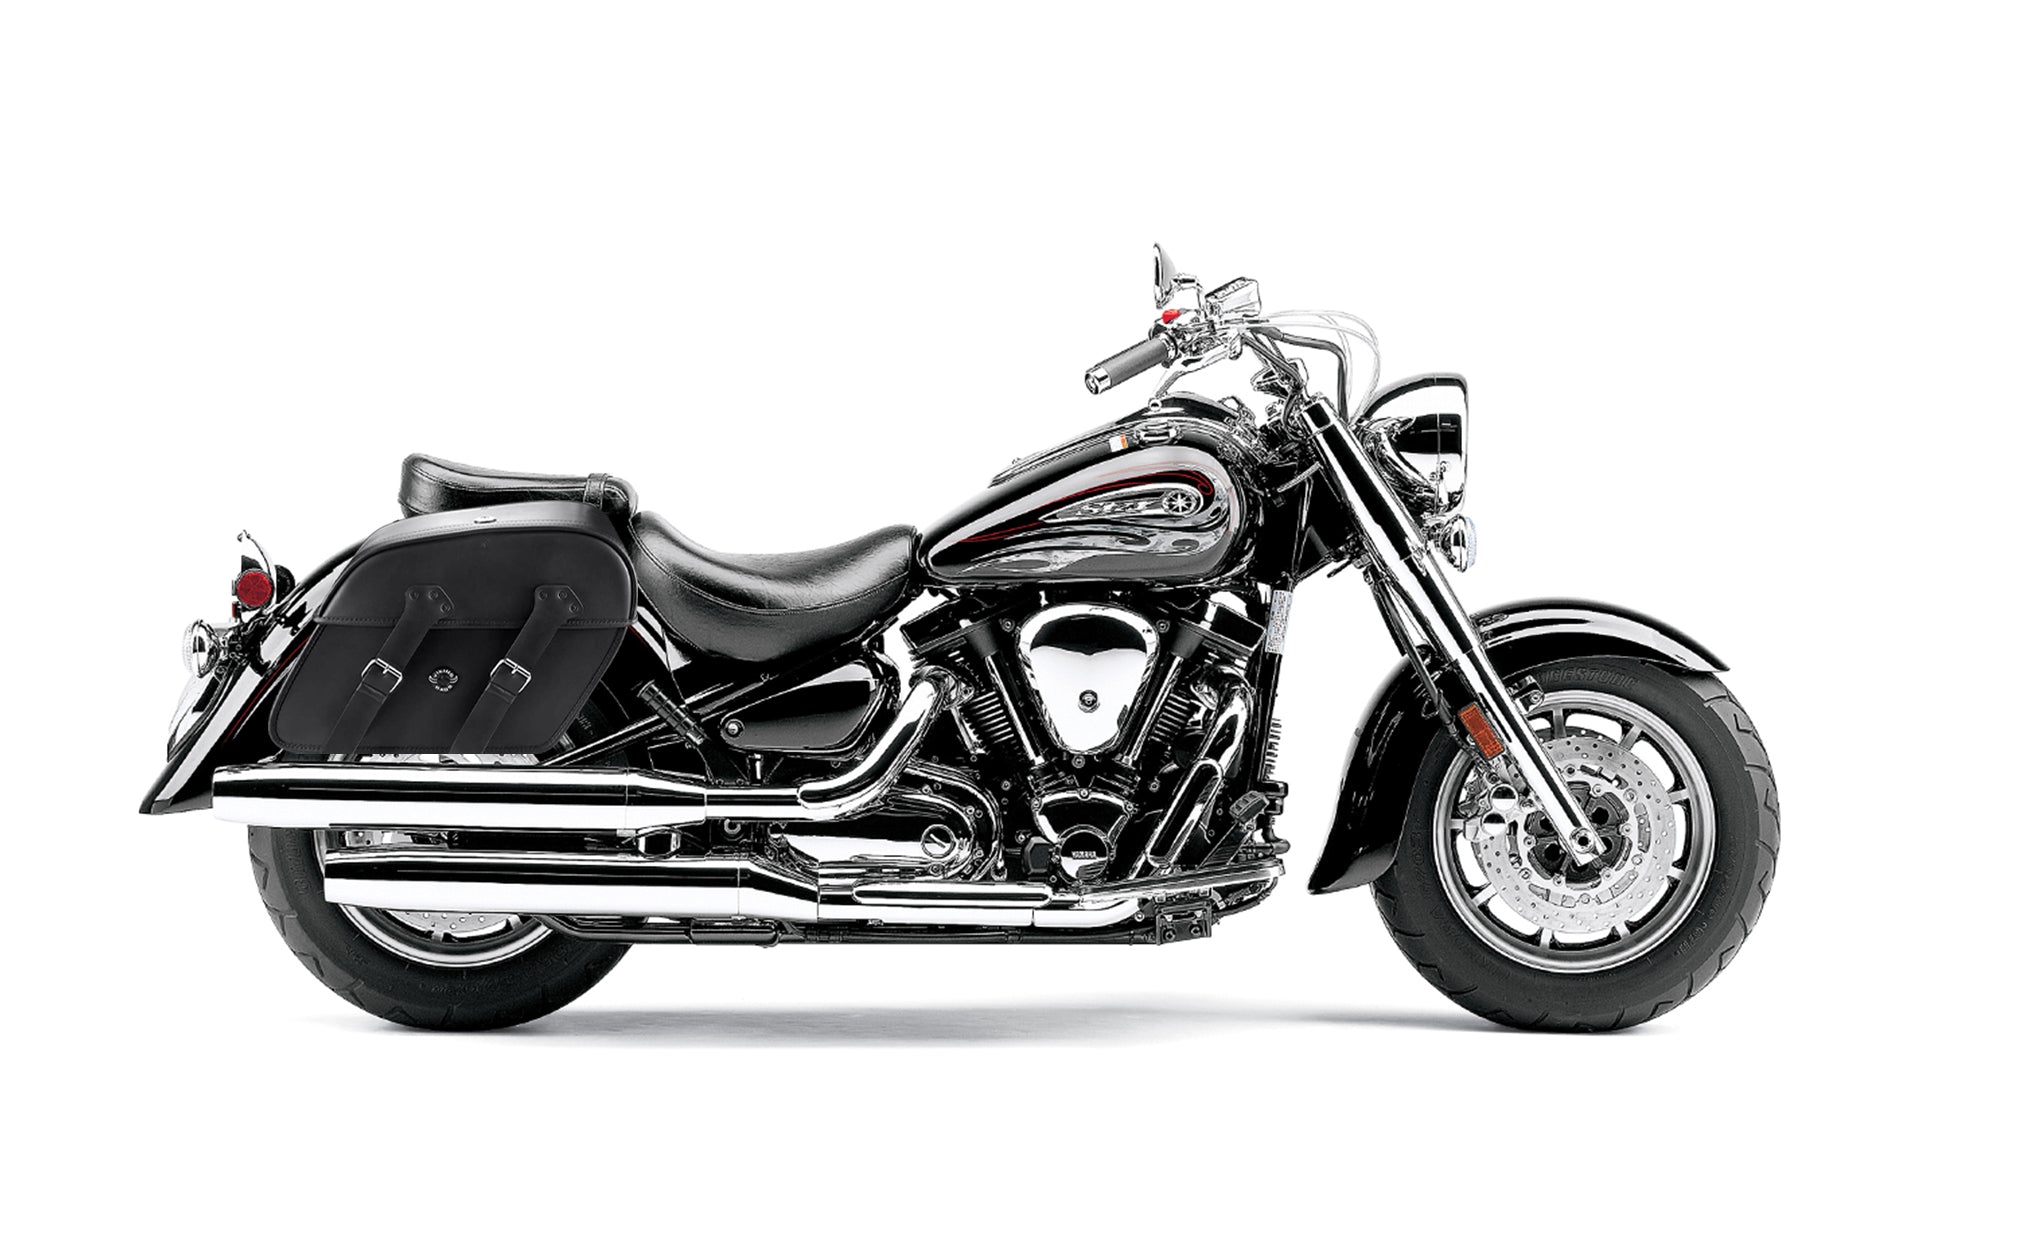 Viking Raven Large Yamaha Road Star S Midnight Motorcycle Leather Saddlebags on Bike Photo @expand